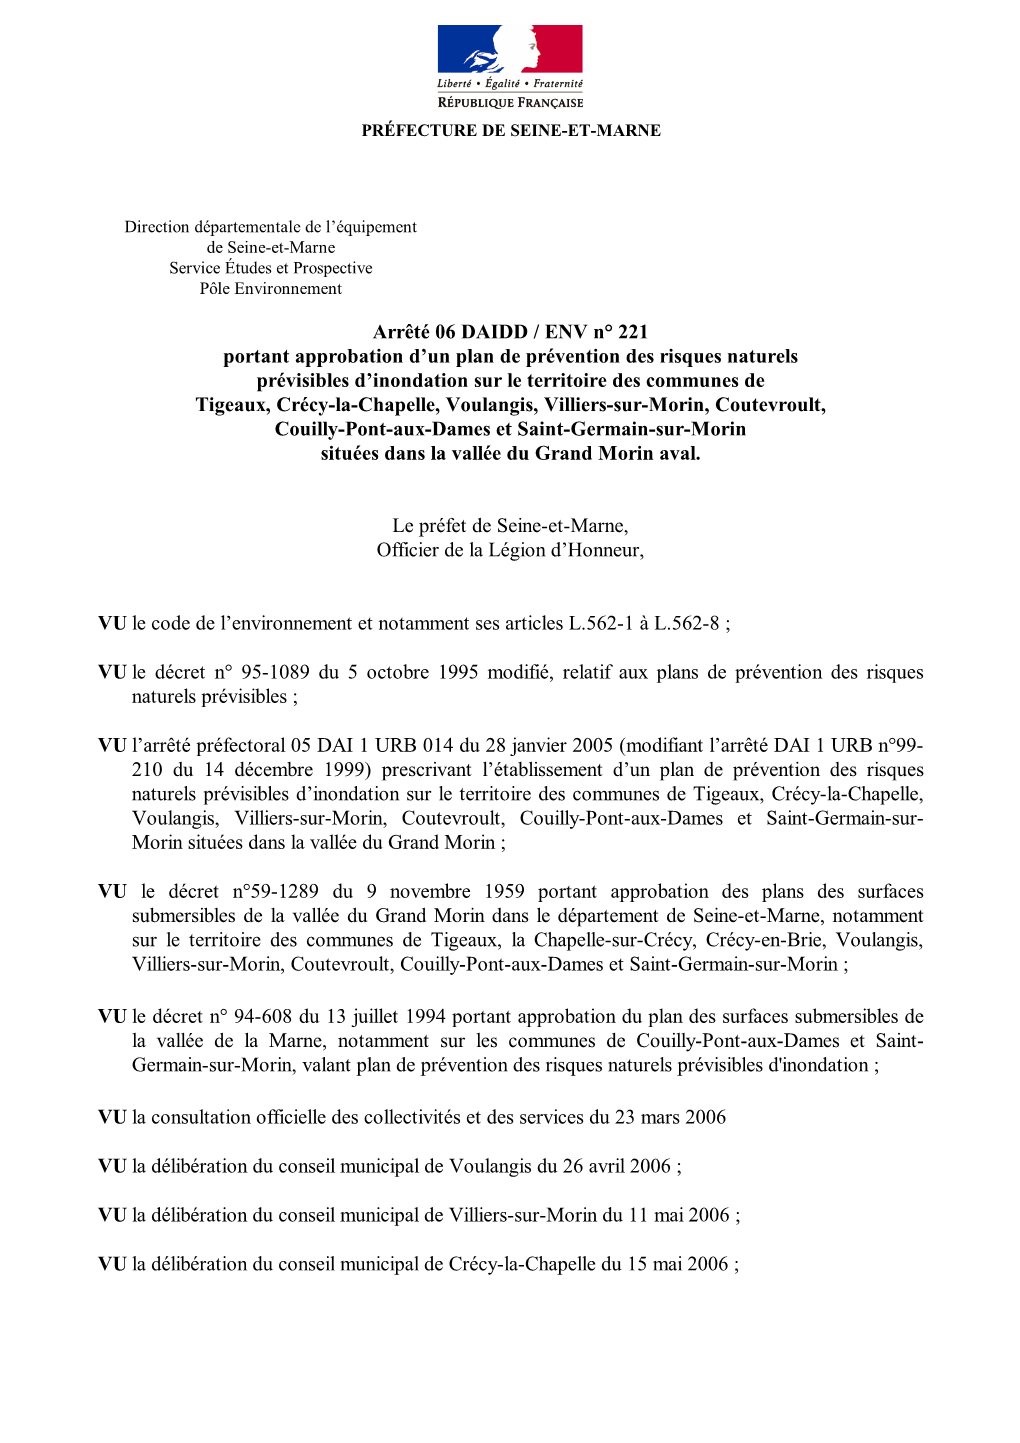 Approuvé Par Arrêté Préfectoral 06 DAIDD ENV N°221 Du 10 Novembre 2006